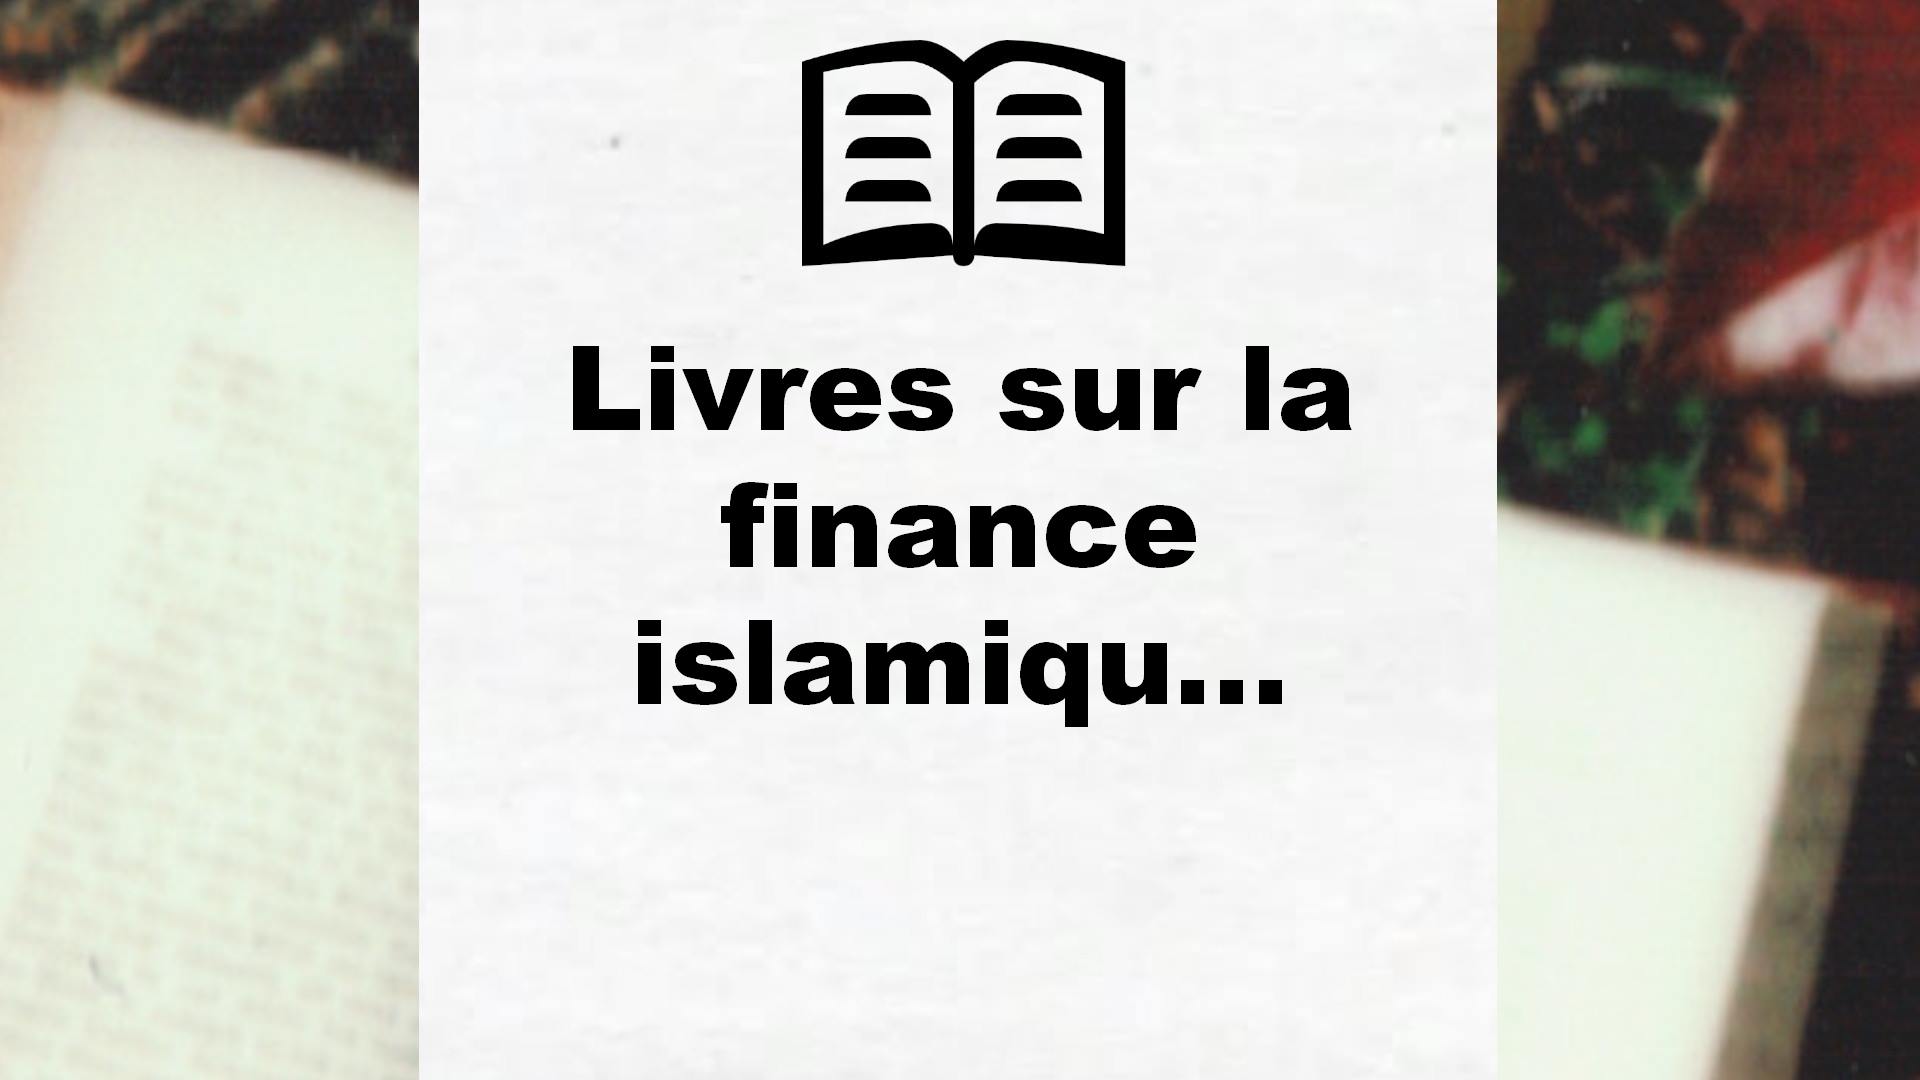 Livres sur la finance islamique gratuit